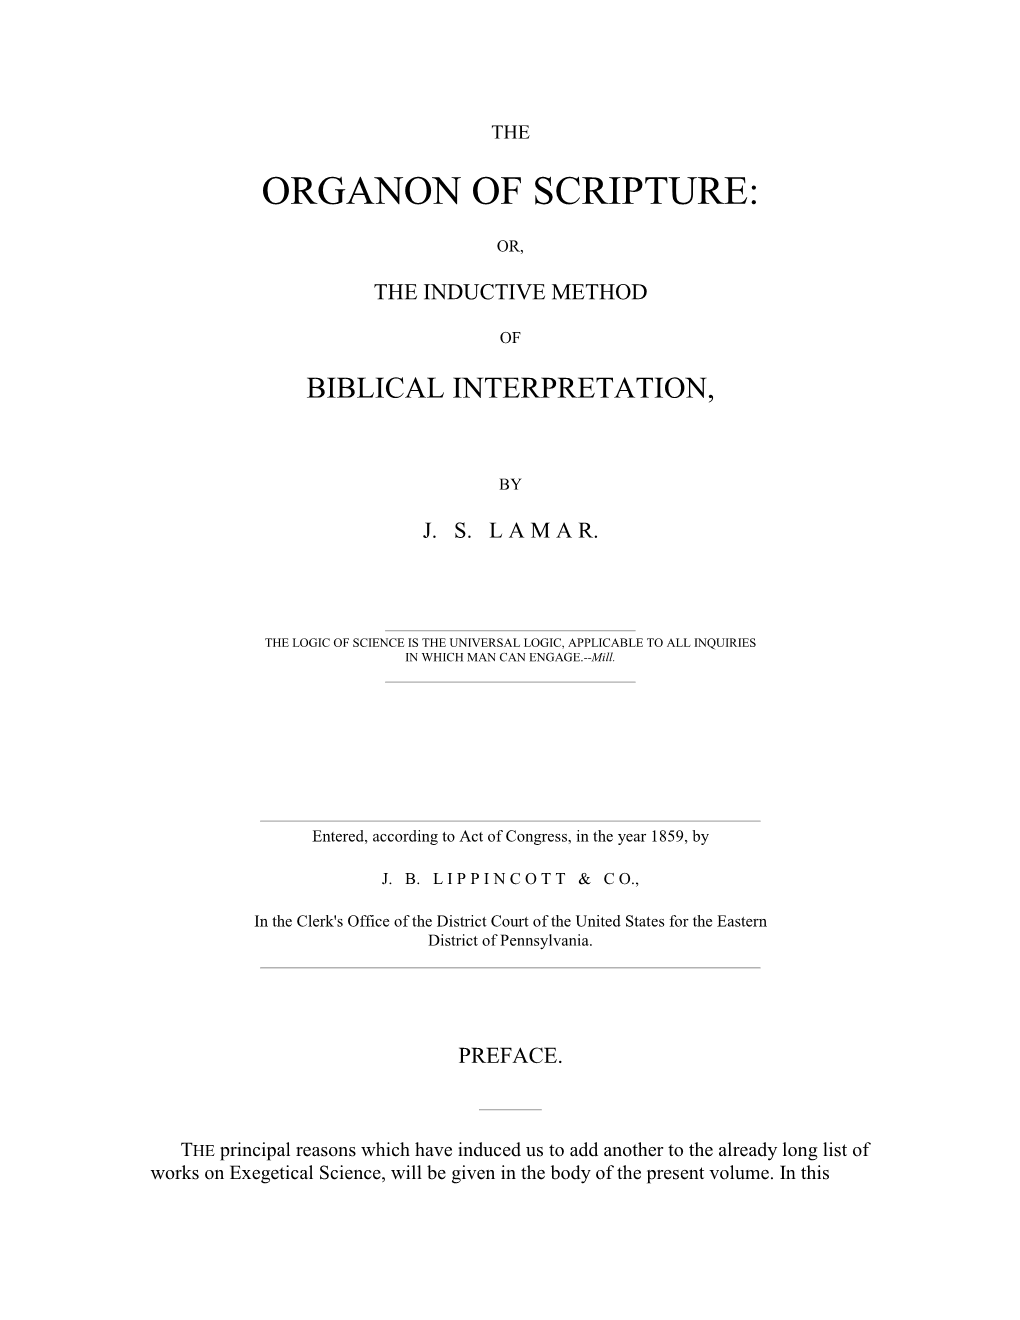 Organon of Scripture